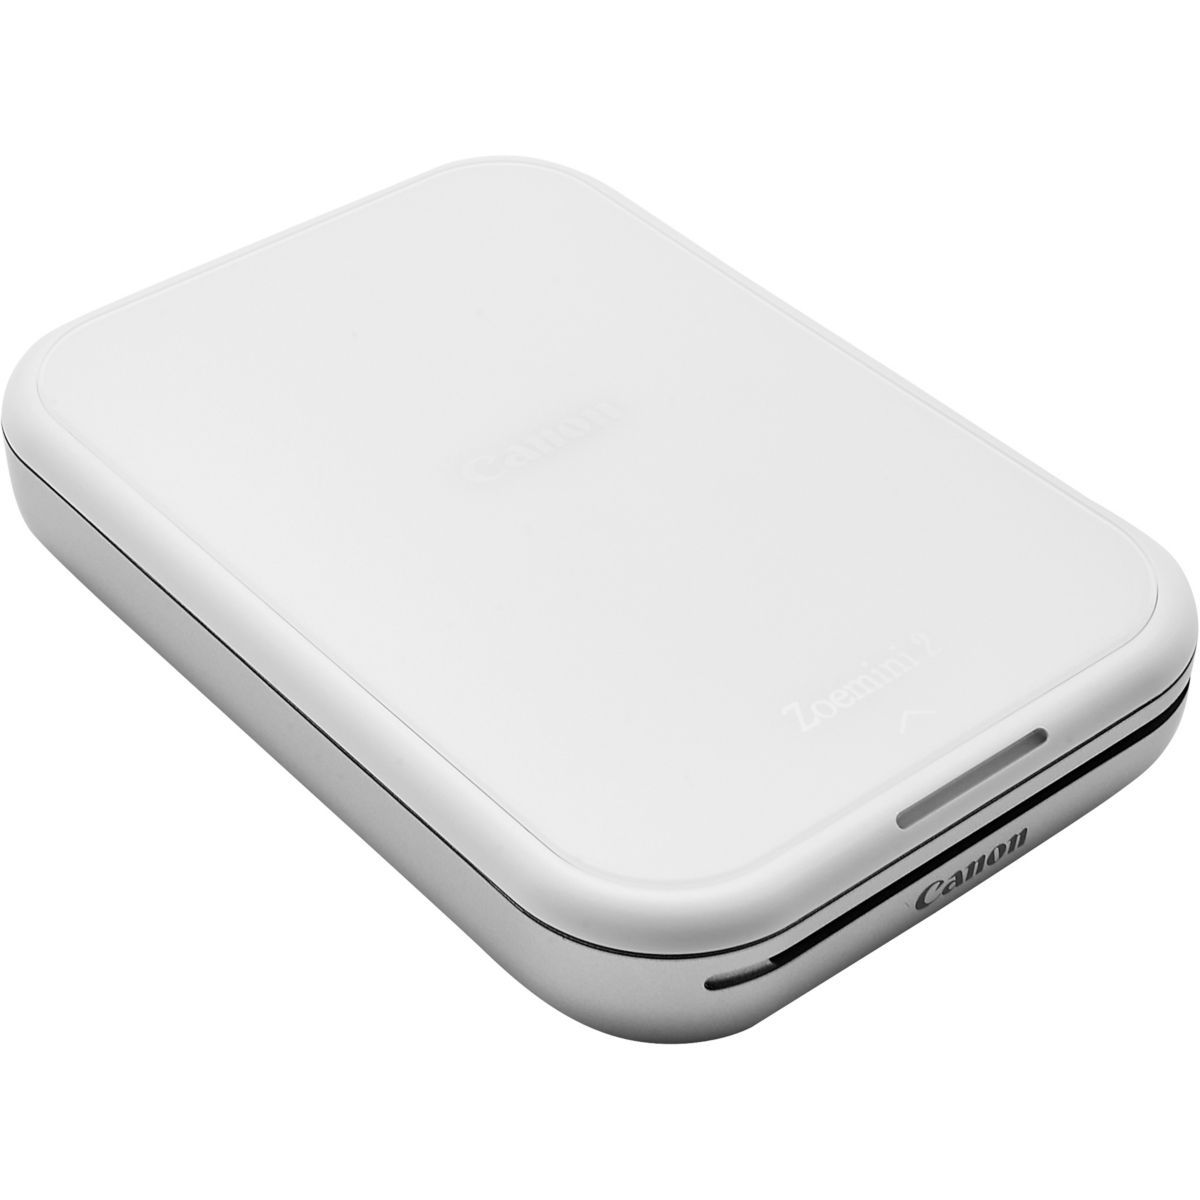 Imprimante photo portable kit créatif zoemini 2 blanche+40 f+acces